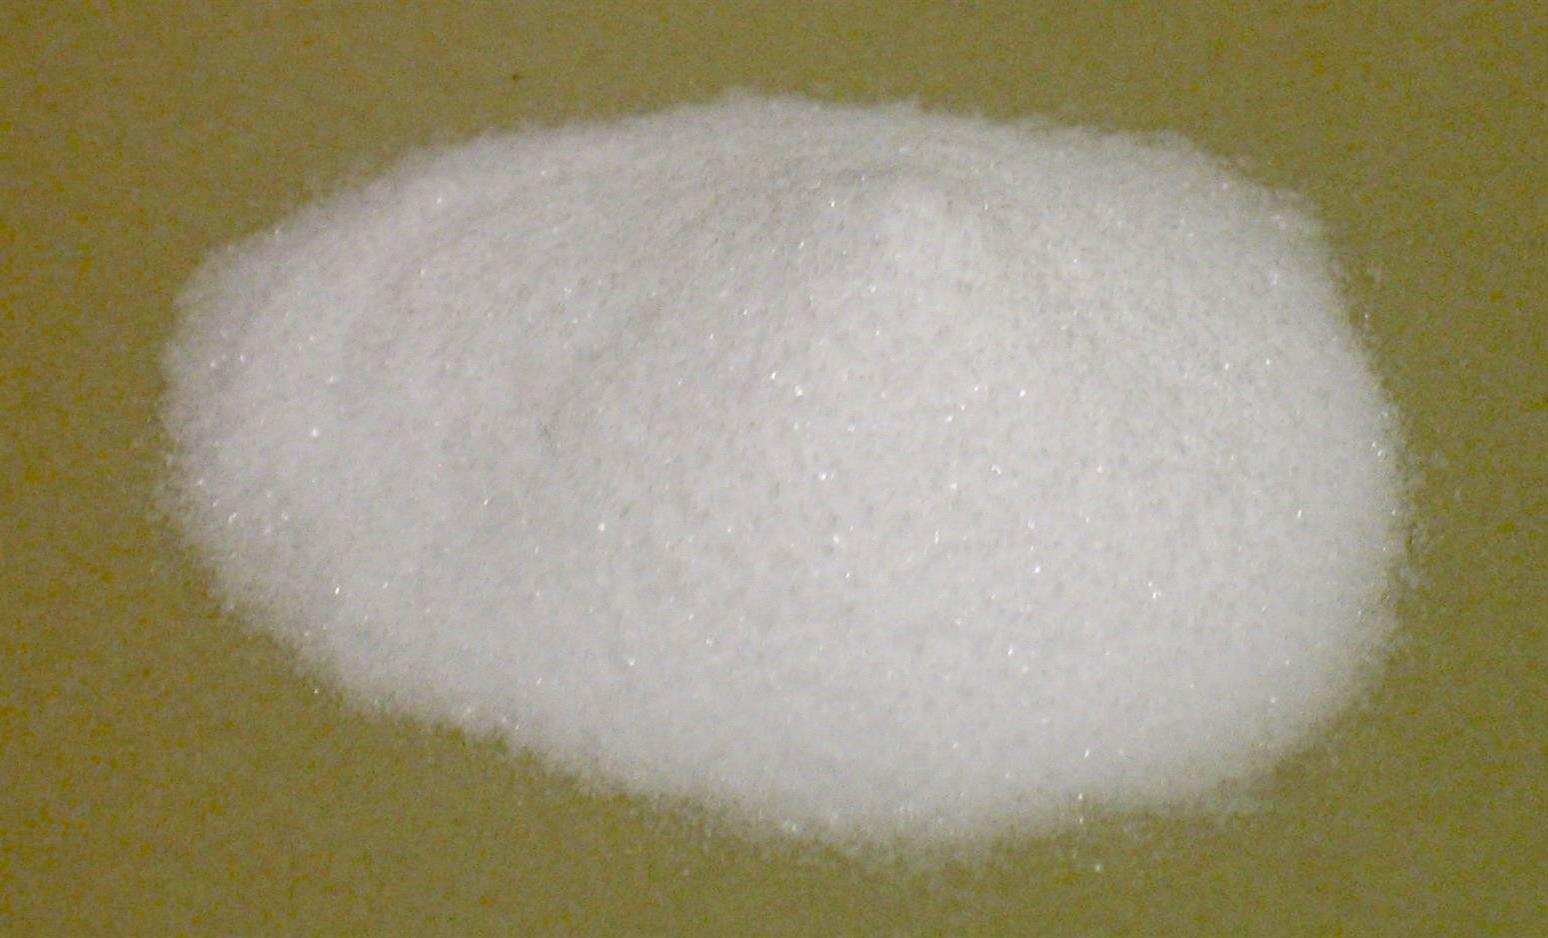 Pharma Grade Sodium Bicarbonate